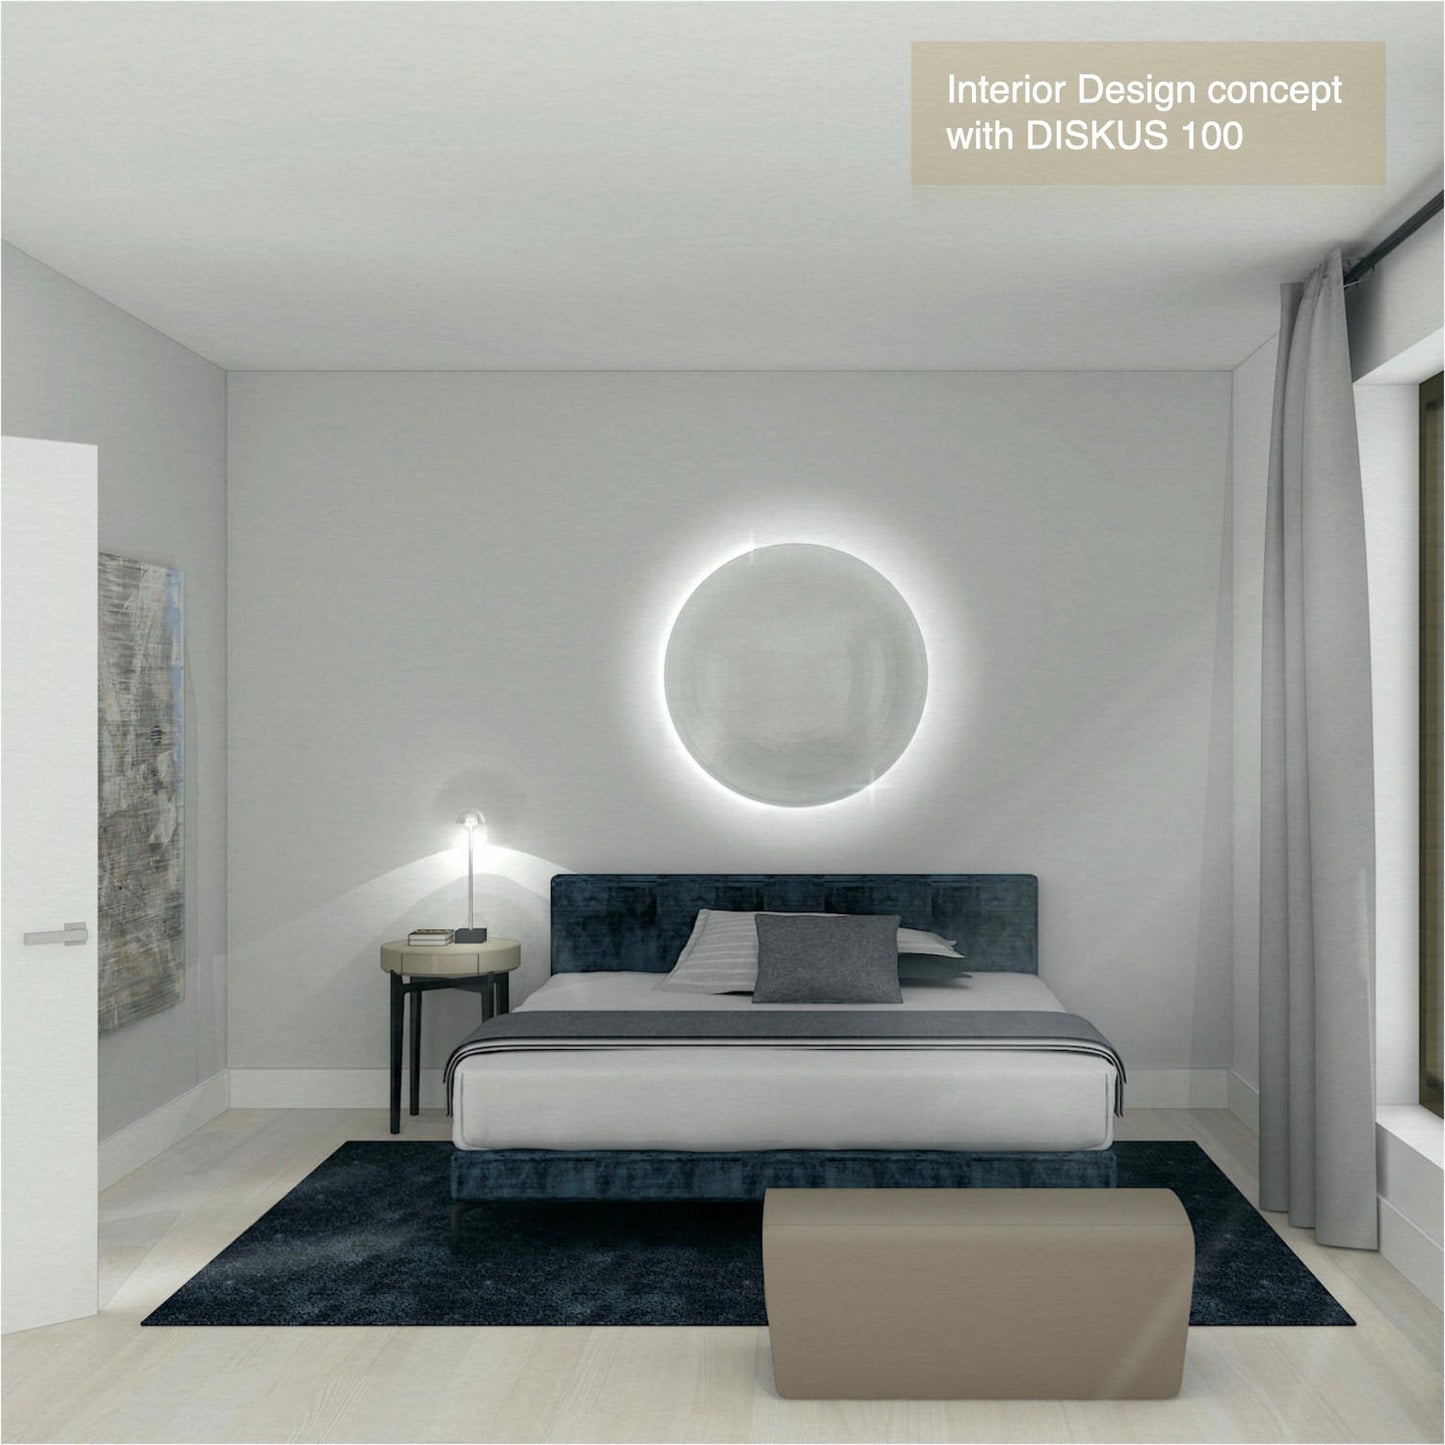 DISKUS 100 Interior Design concept by Christine Kröncke